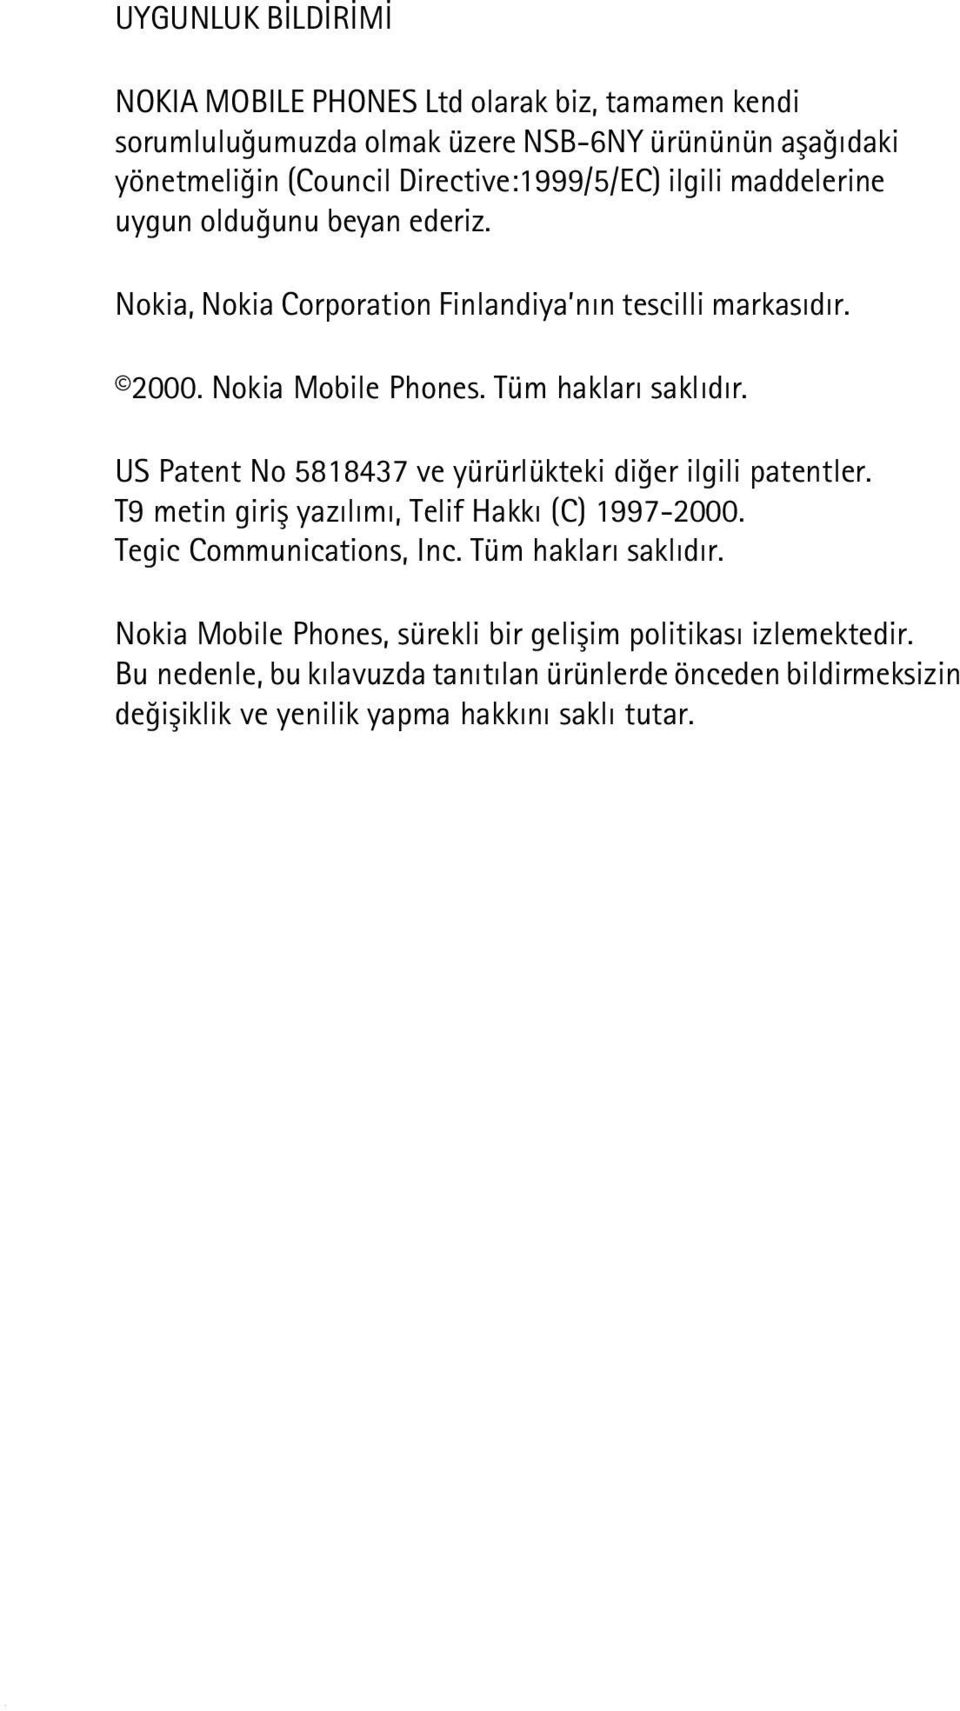 US Patent No 5818437 ve yürürlükteki diðer ilgili patentler. T9 metin giriþ yazýlýmý, Telif Hakký (C) 1997-2000. Tegic Communications, Inc. Tüm haklarý saklýdýr.